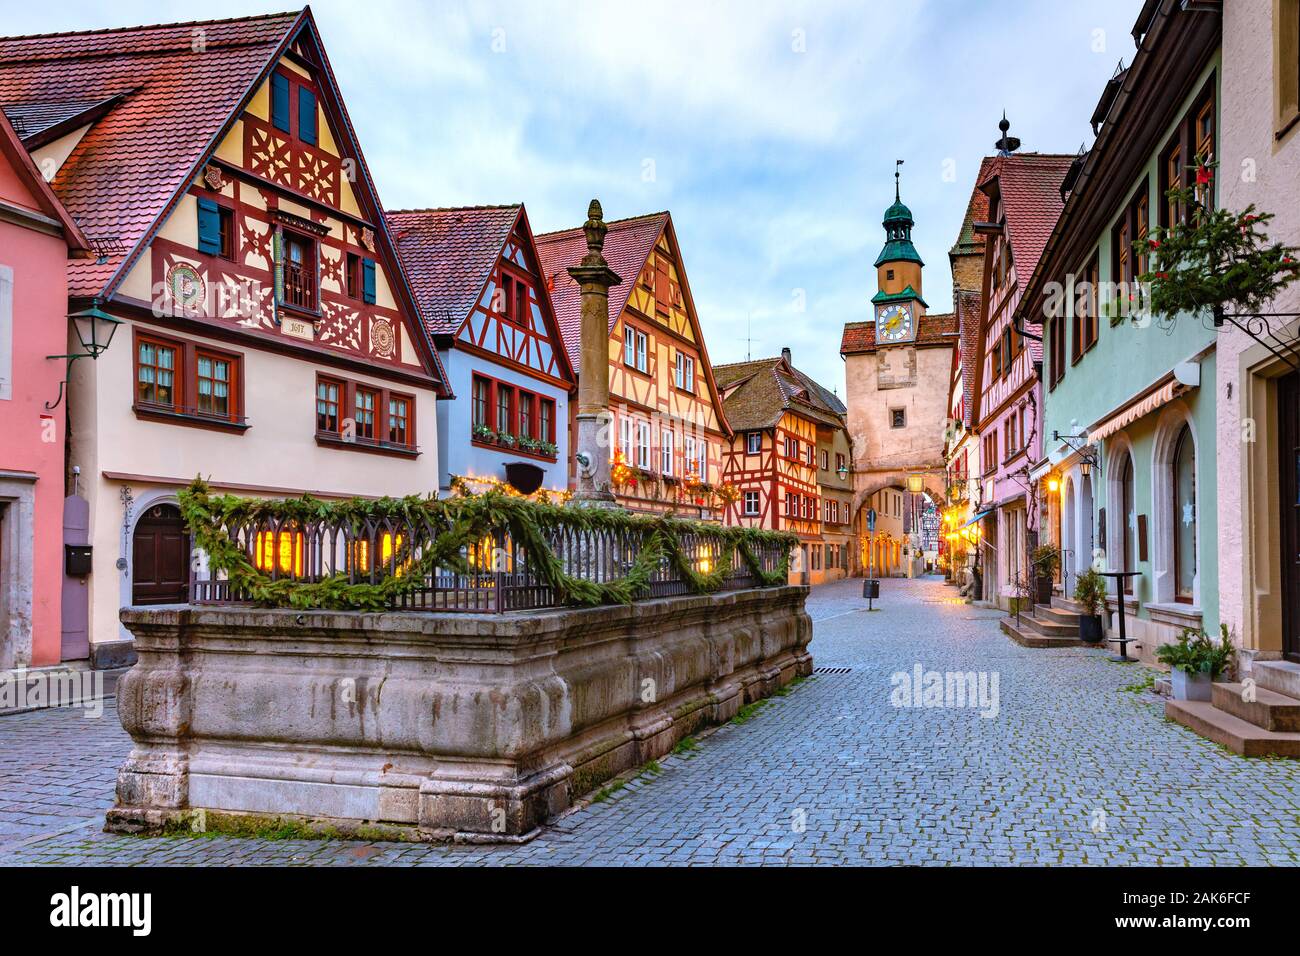 La calle de Navidad iluminado y decorado con la puerta y la torre Markusturm en la antigua ciudad medieval de Rothenburg ob der Tauber, Baviera, Alemania del sur Foto de stock